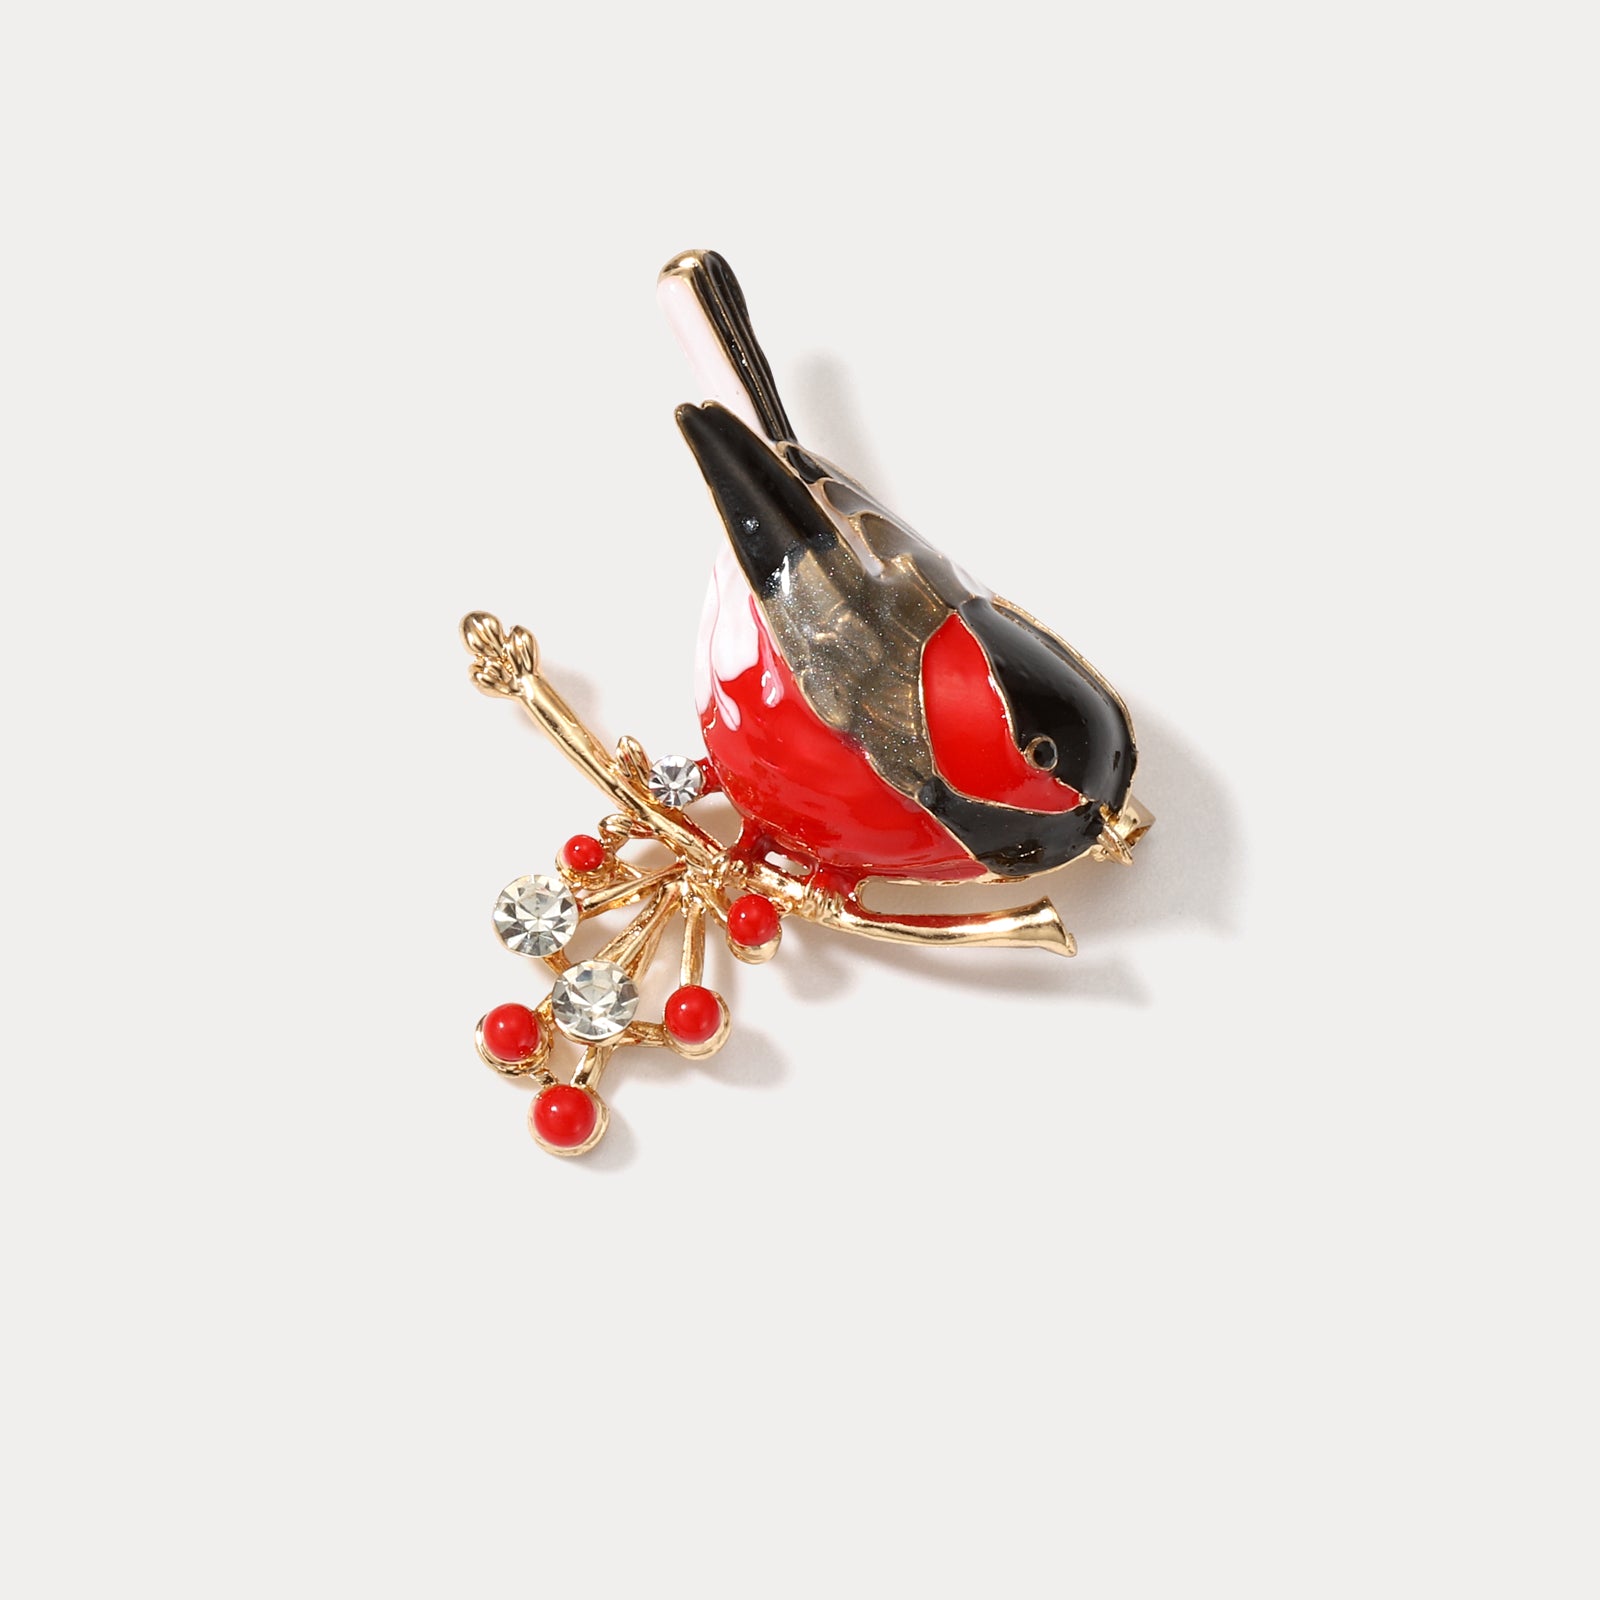 Sparrow Enamel Brooch Jewelry